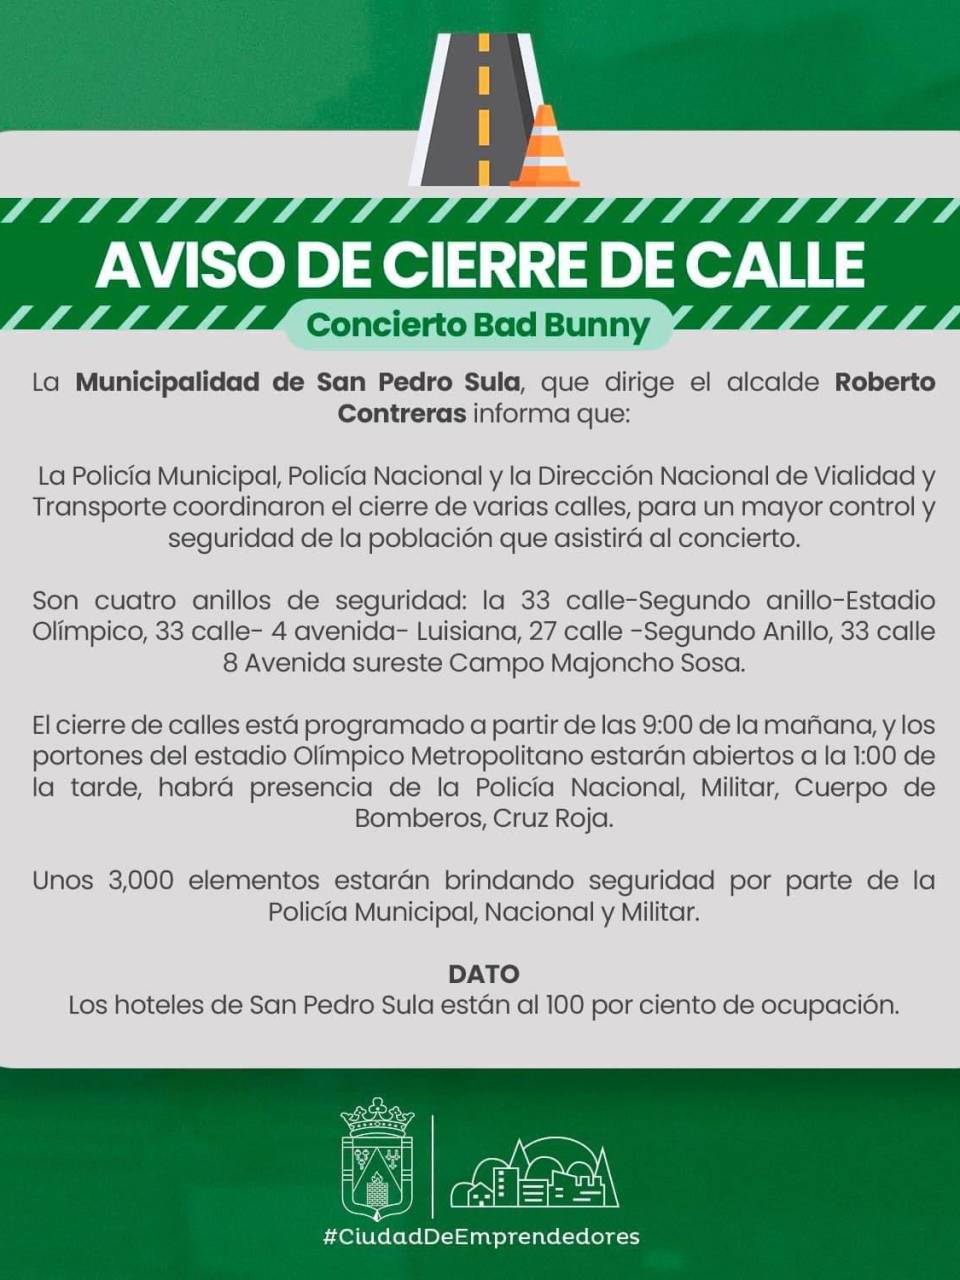 Calles cerradas, largas filas y hoteles llenos previo al concierto de Bad Bunny en San Pedro Sula